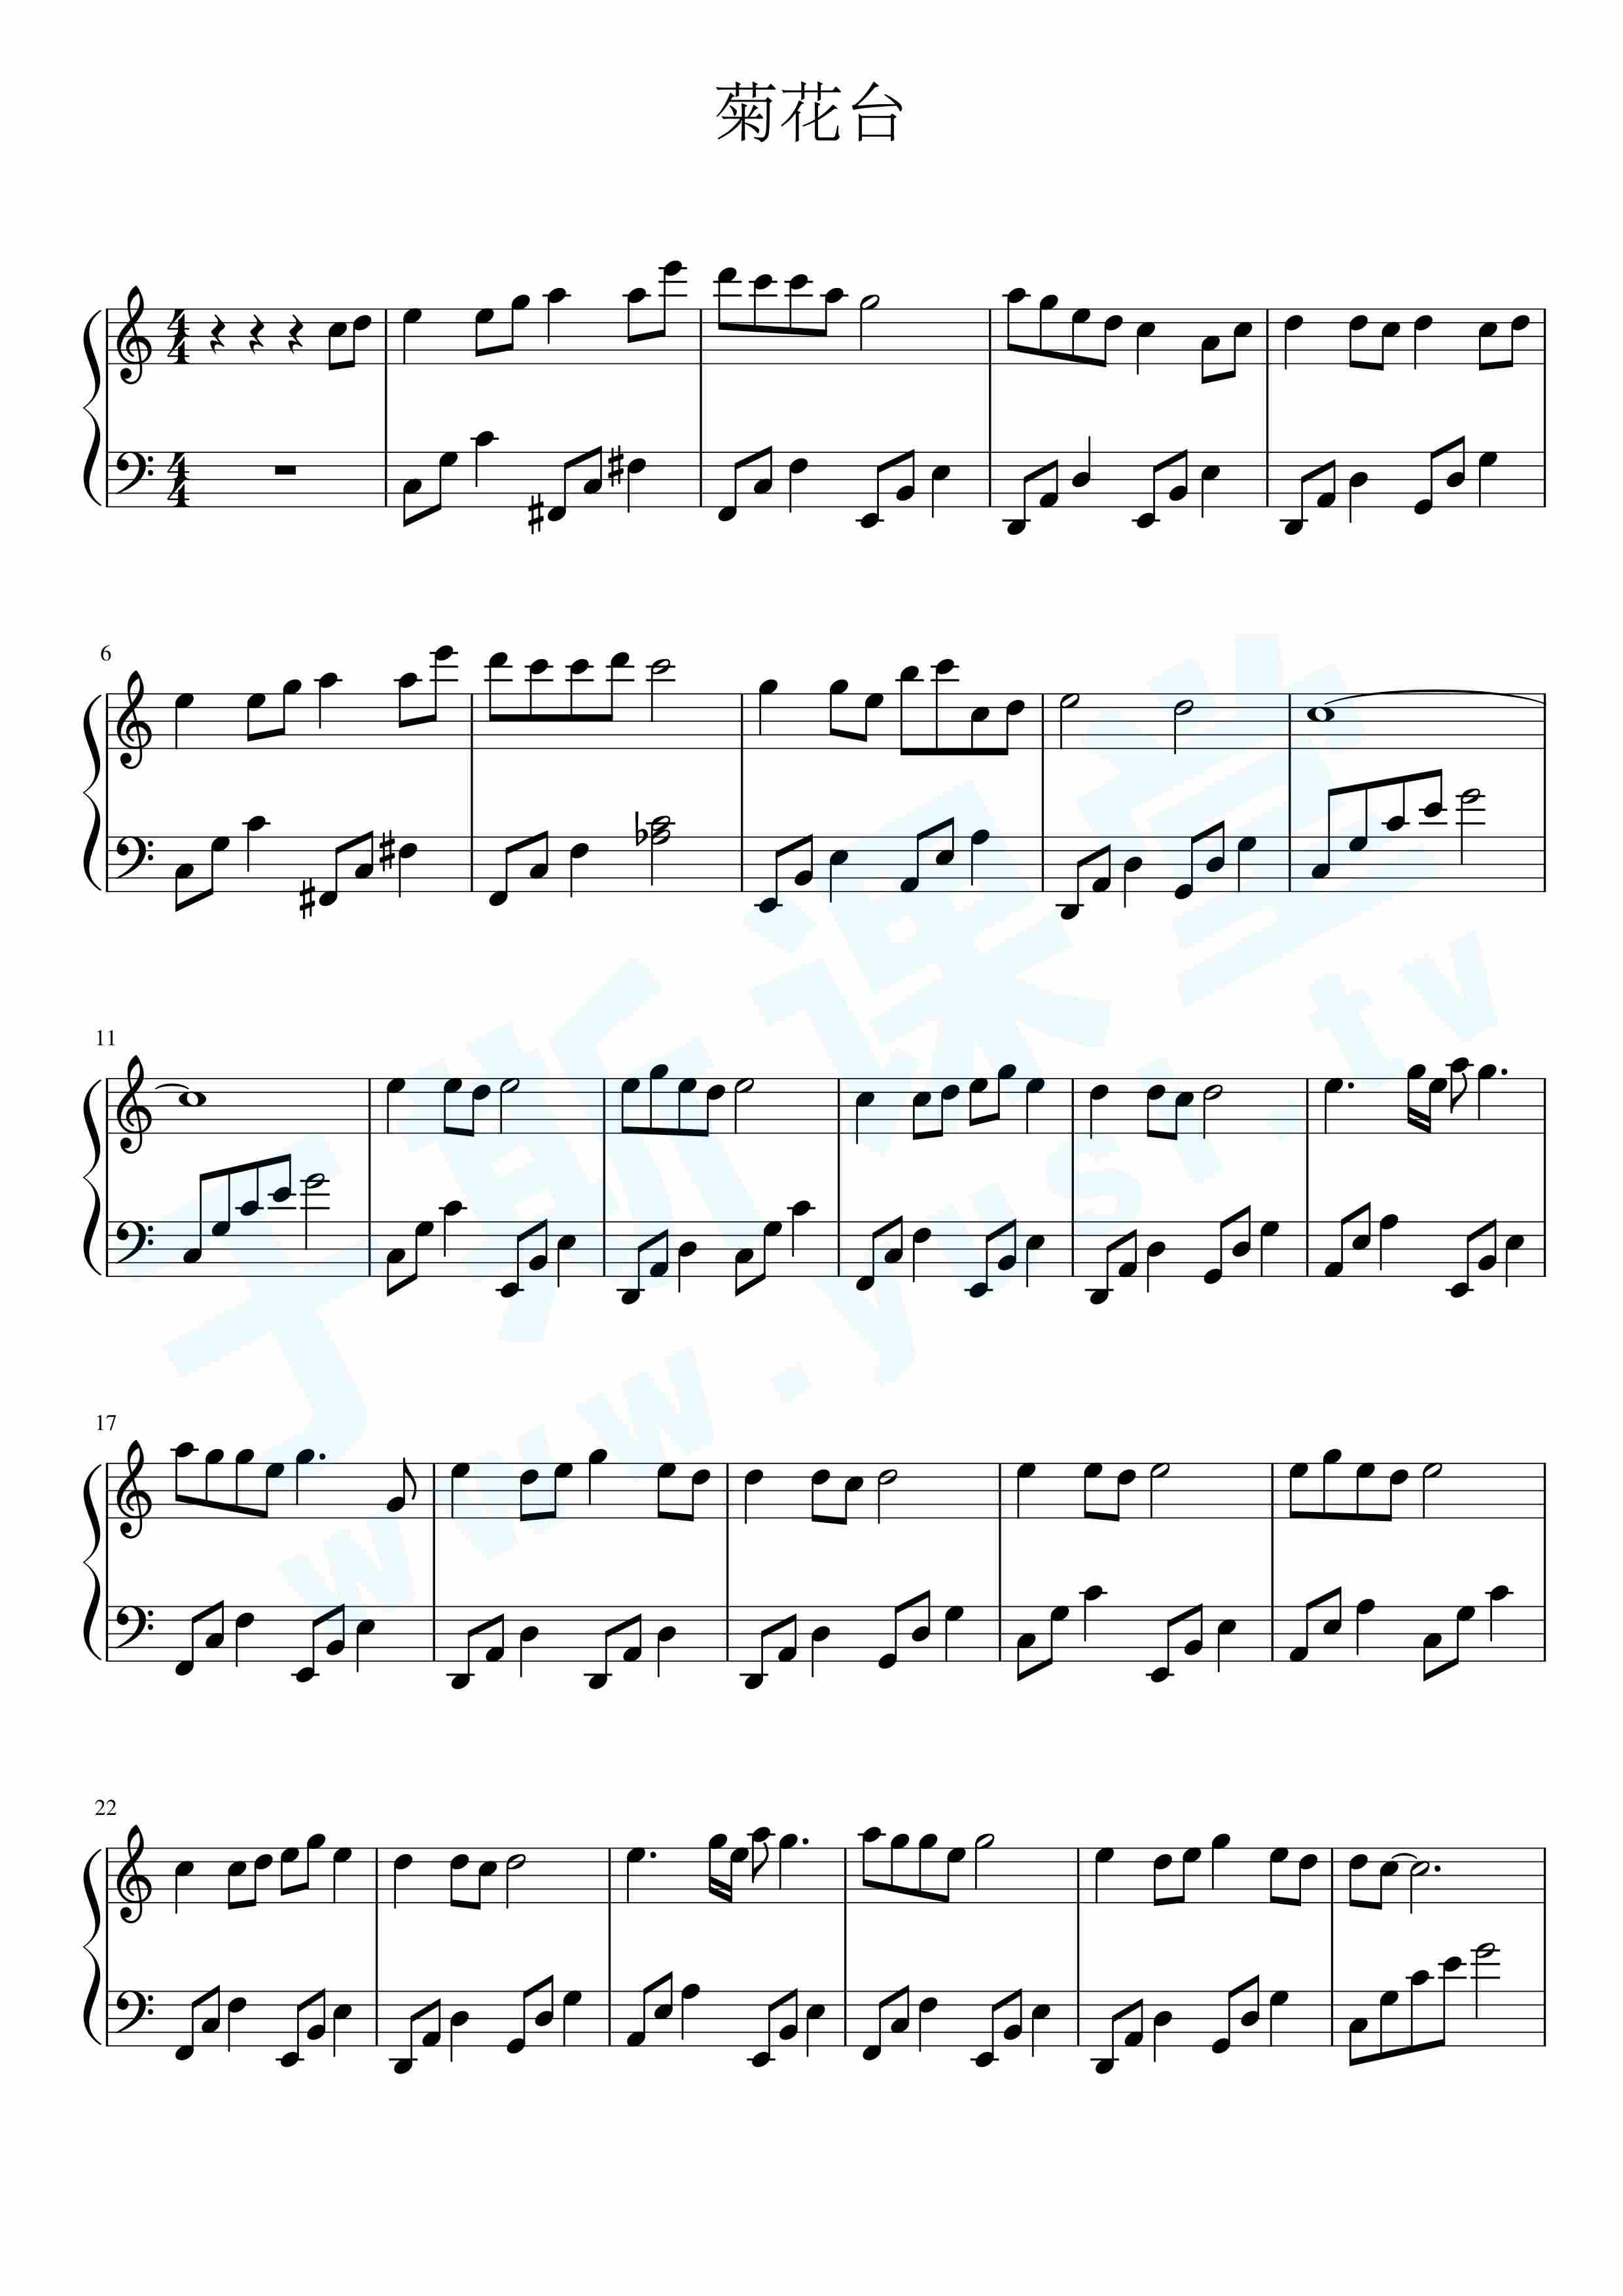 菊花台c调简单版钢琴曲谱,于斯课堂精心出品